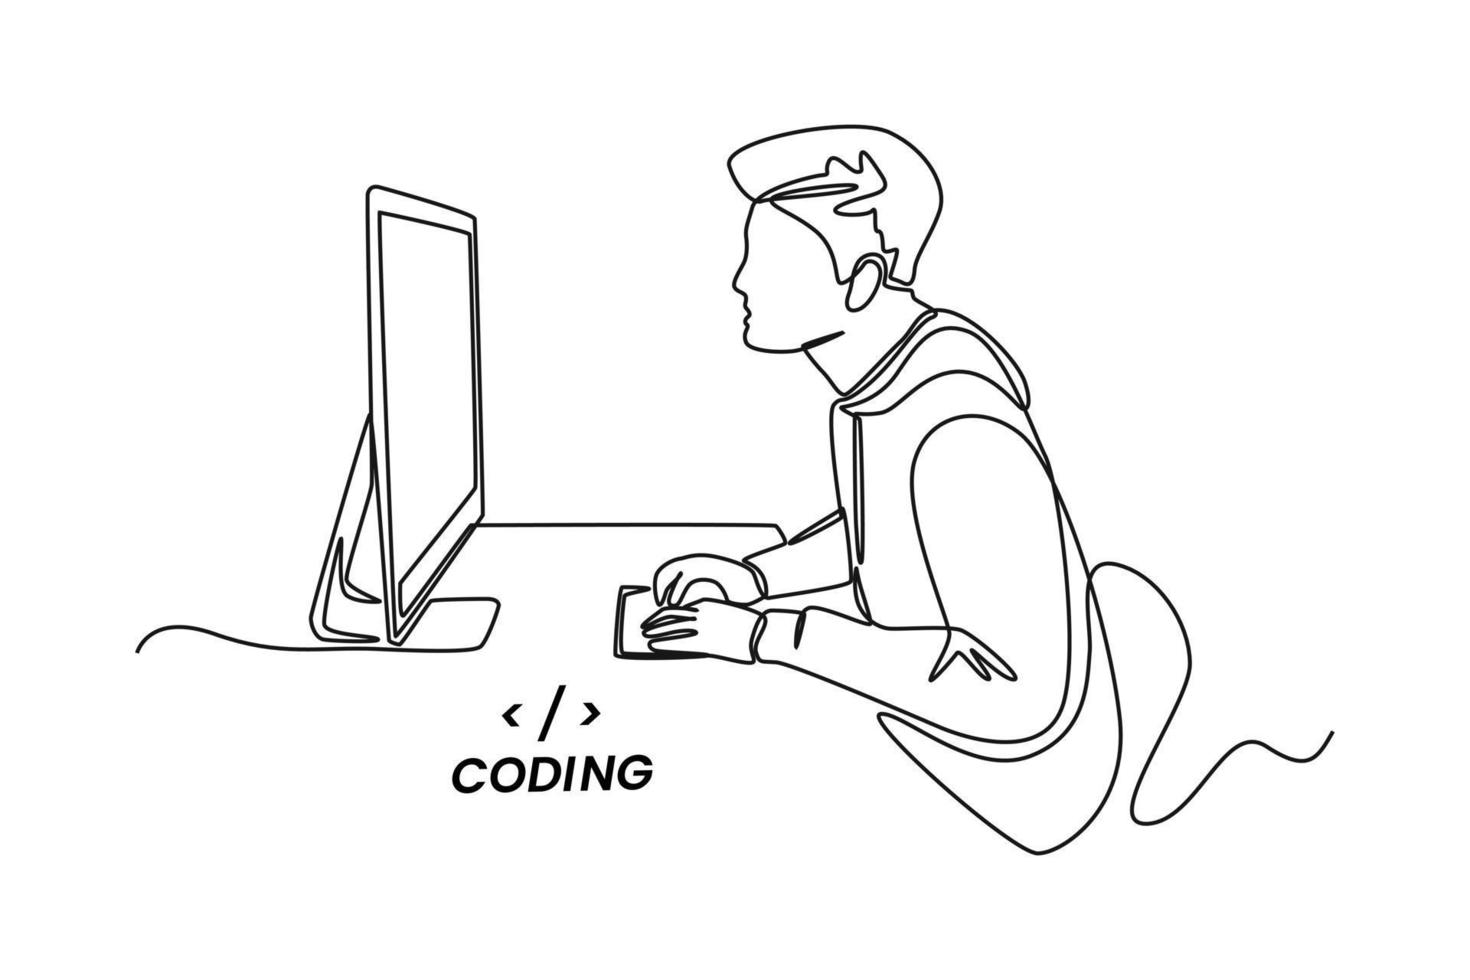 programadores ou desenvolvedores de desenho de uma única linha criam código de linguagem de programação na frente do computador. conceito de código de programação. ilustração em vetor gráfico de desenho de desenho de linha contínua.